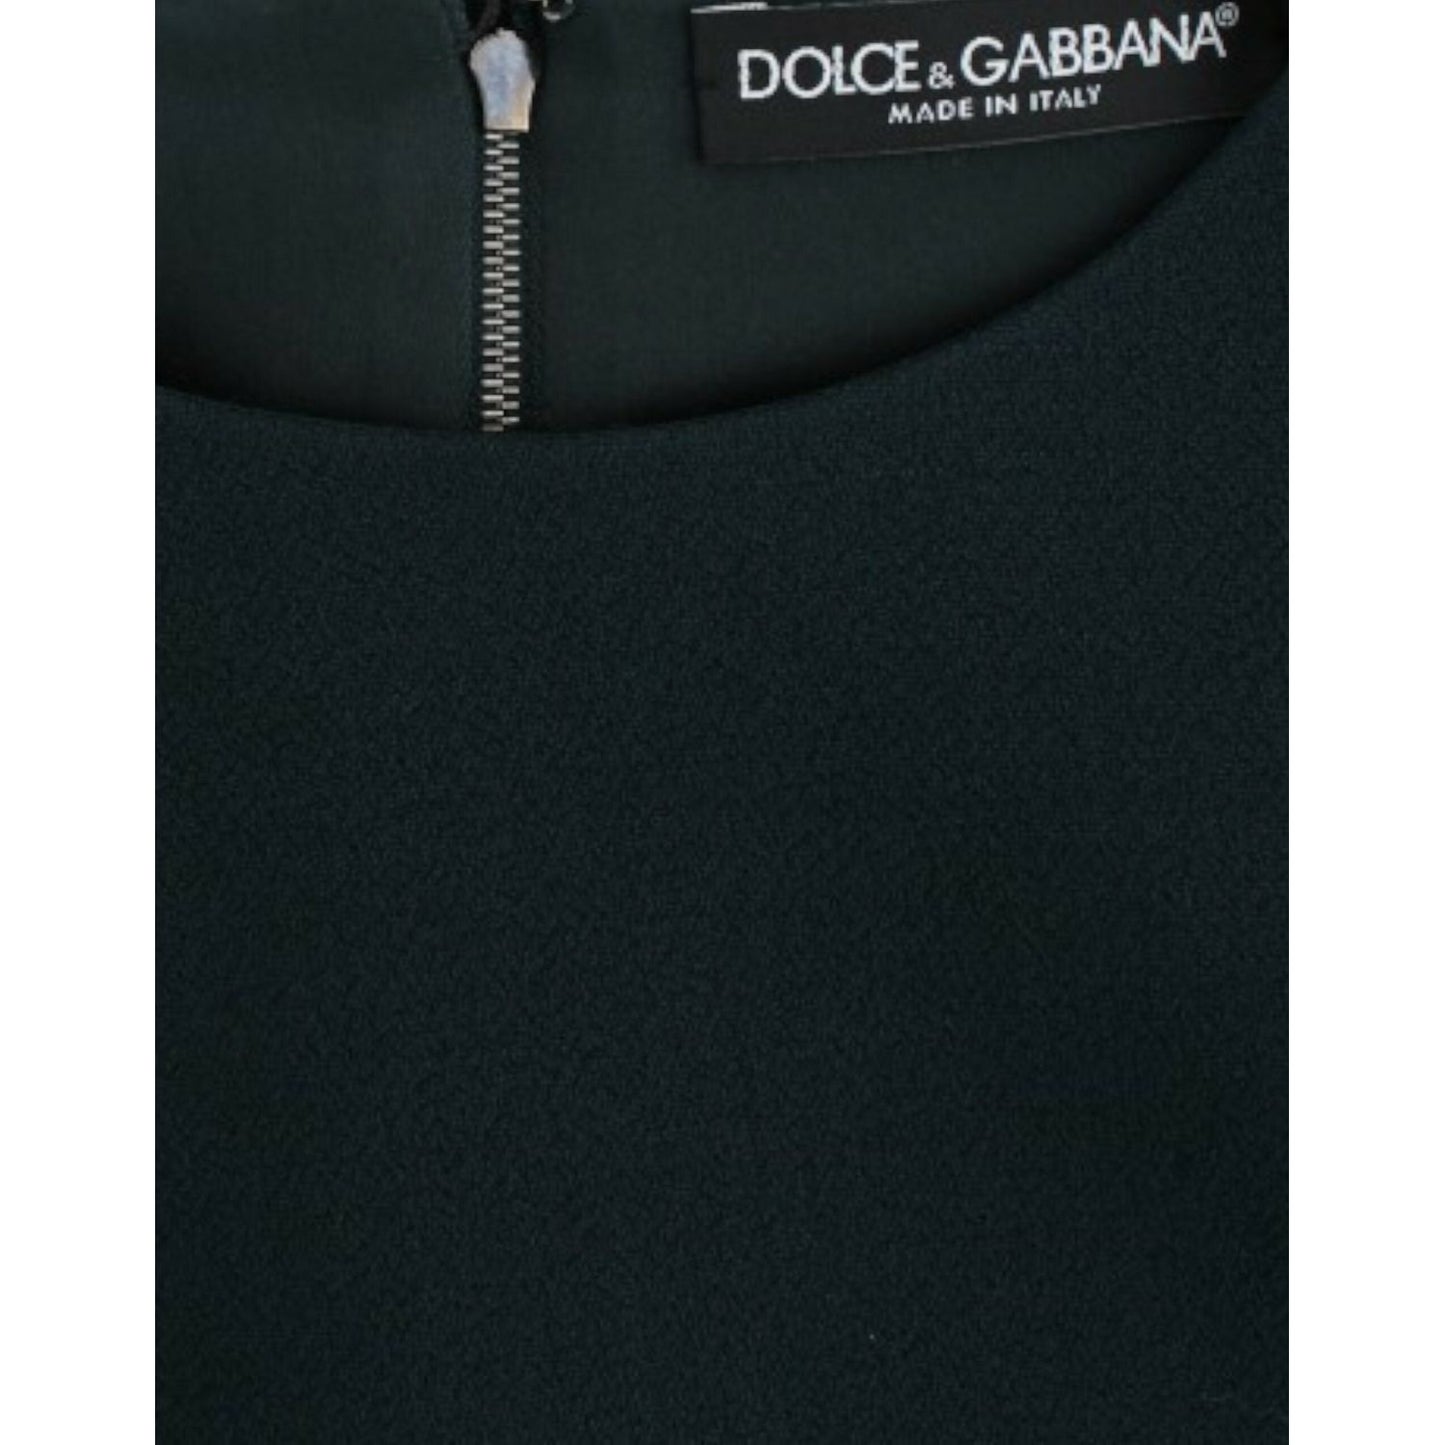 Dolce & GabbanaEnchanted Sicily Green Wool Silk Blend BlouseMcRichard Designer Brands£319.00